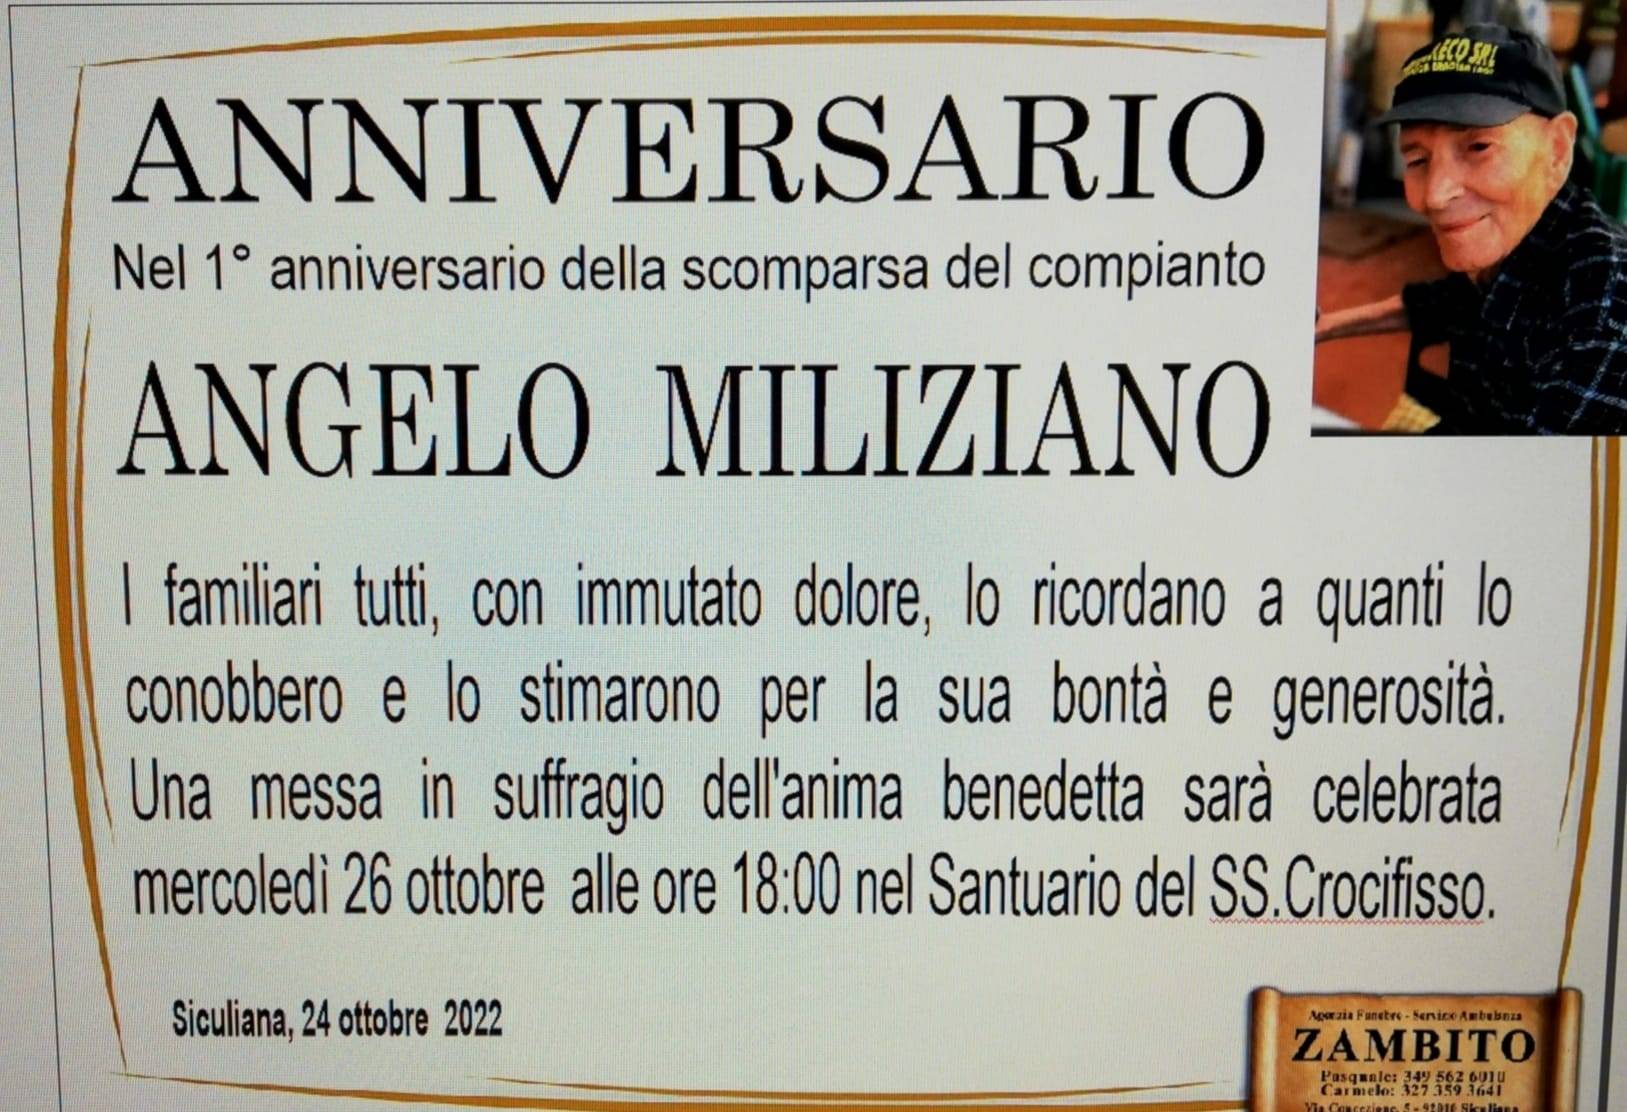 Angelo Miliziano